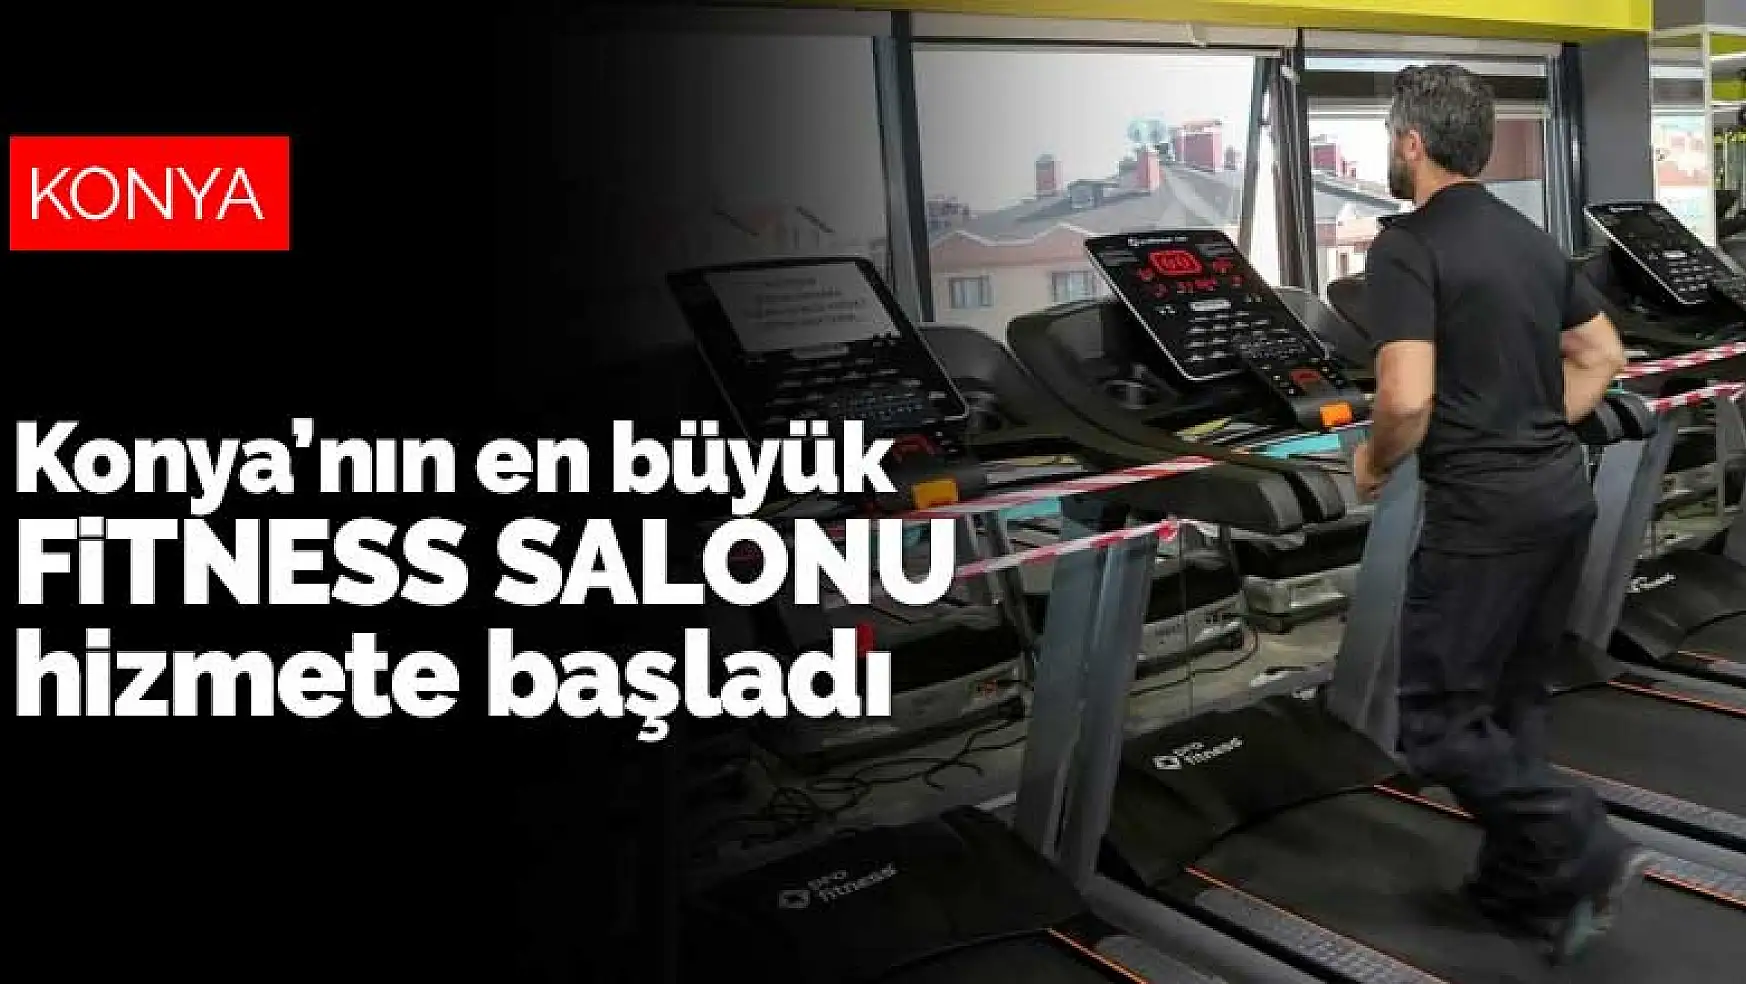 Konya'nın en büyük fitness salonu hizmete başladı